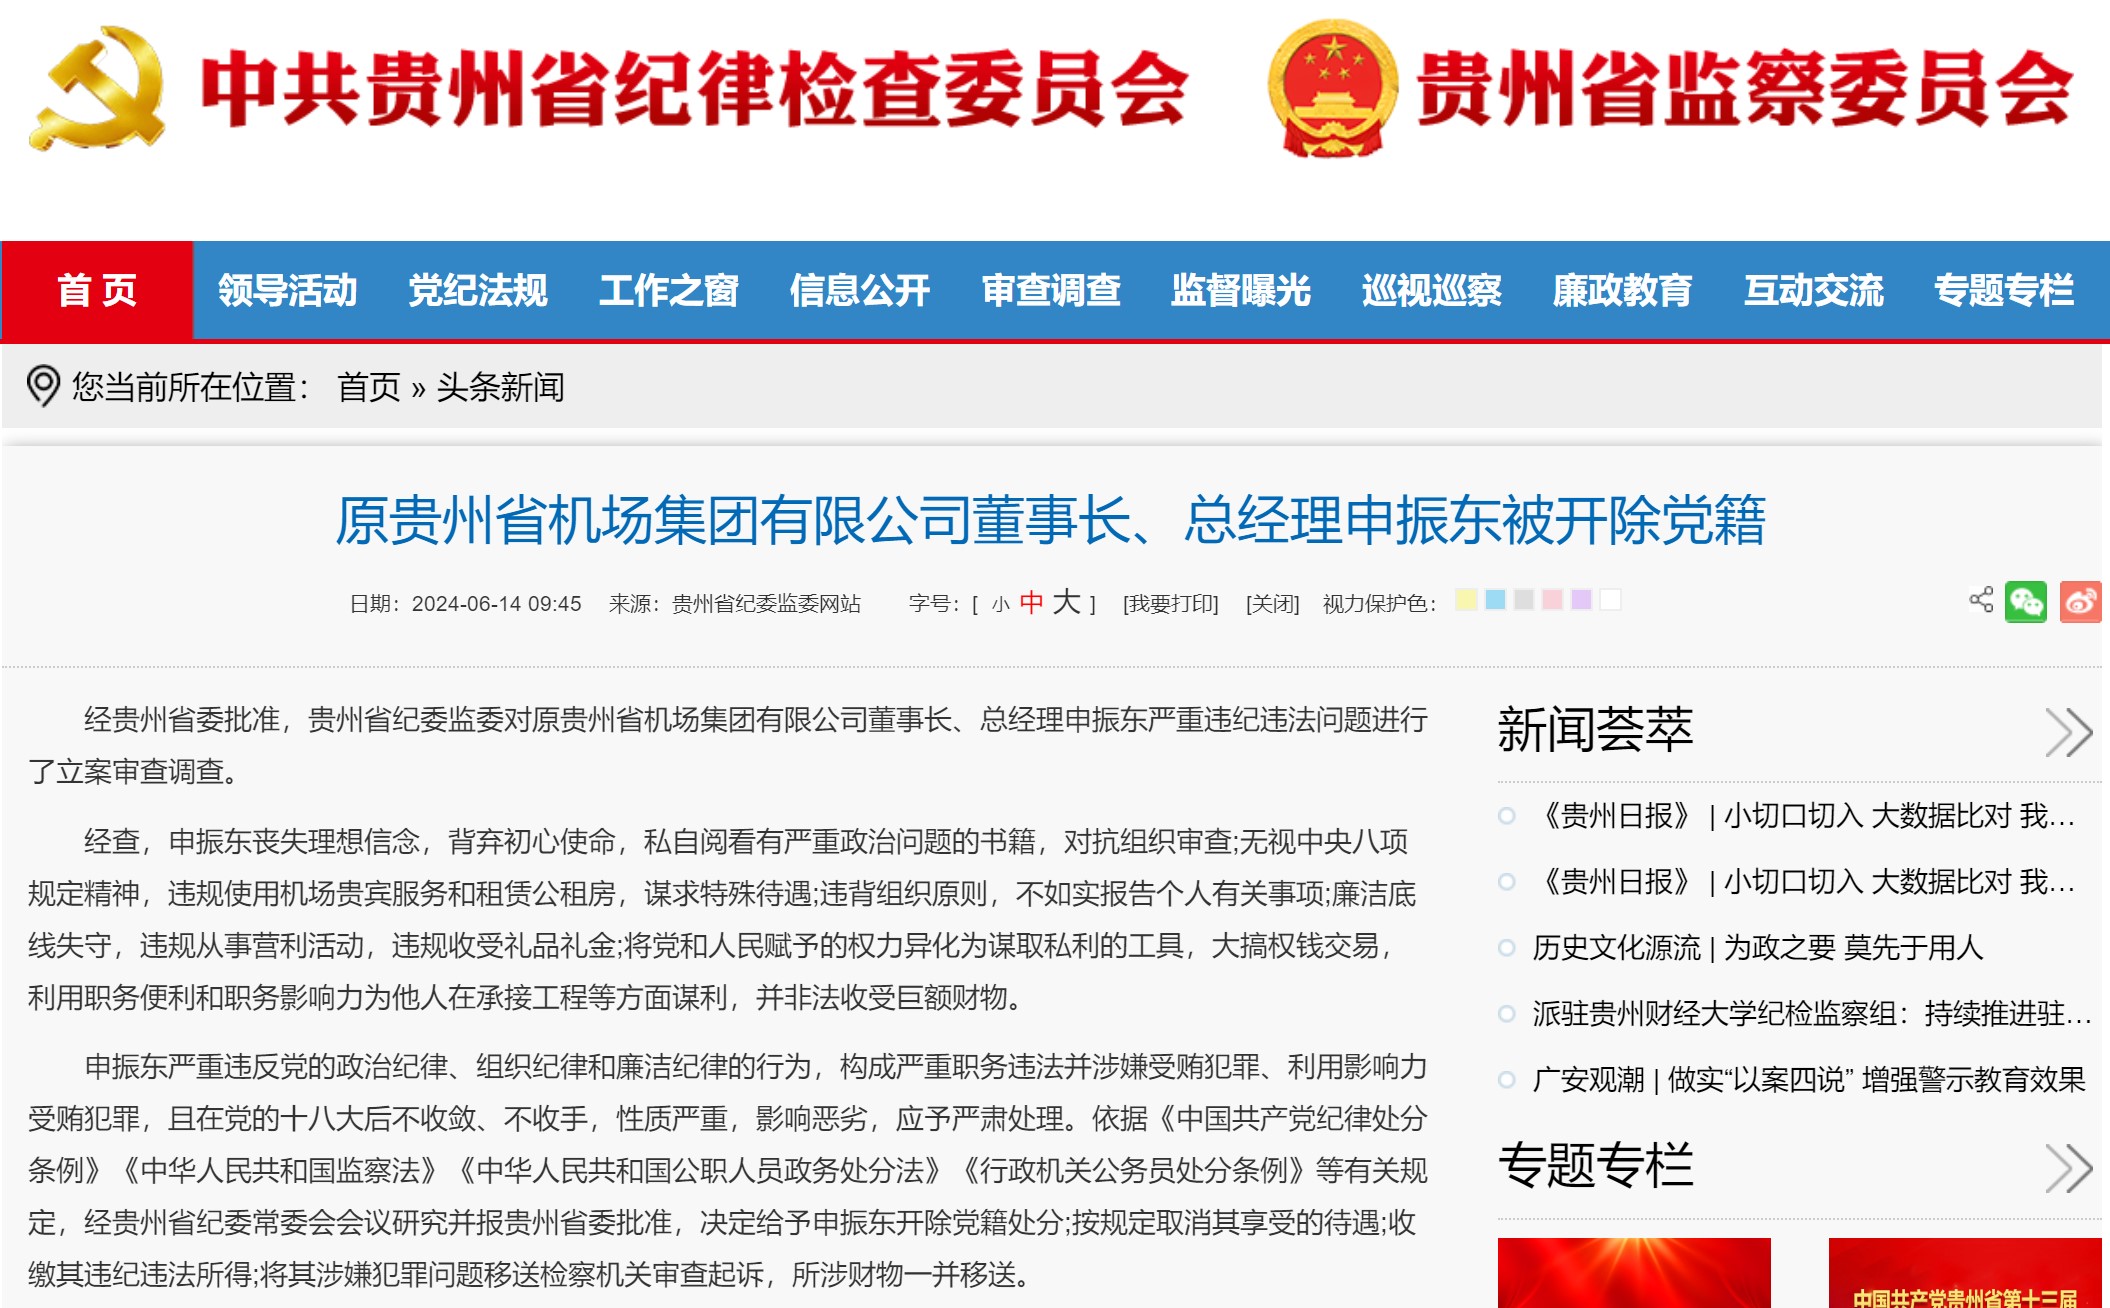 原贵州省机场集团有限公司董事长、总经理申振东被开除党籍